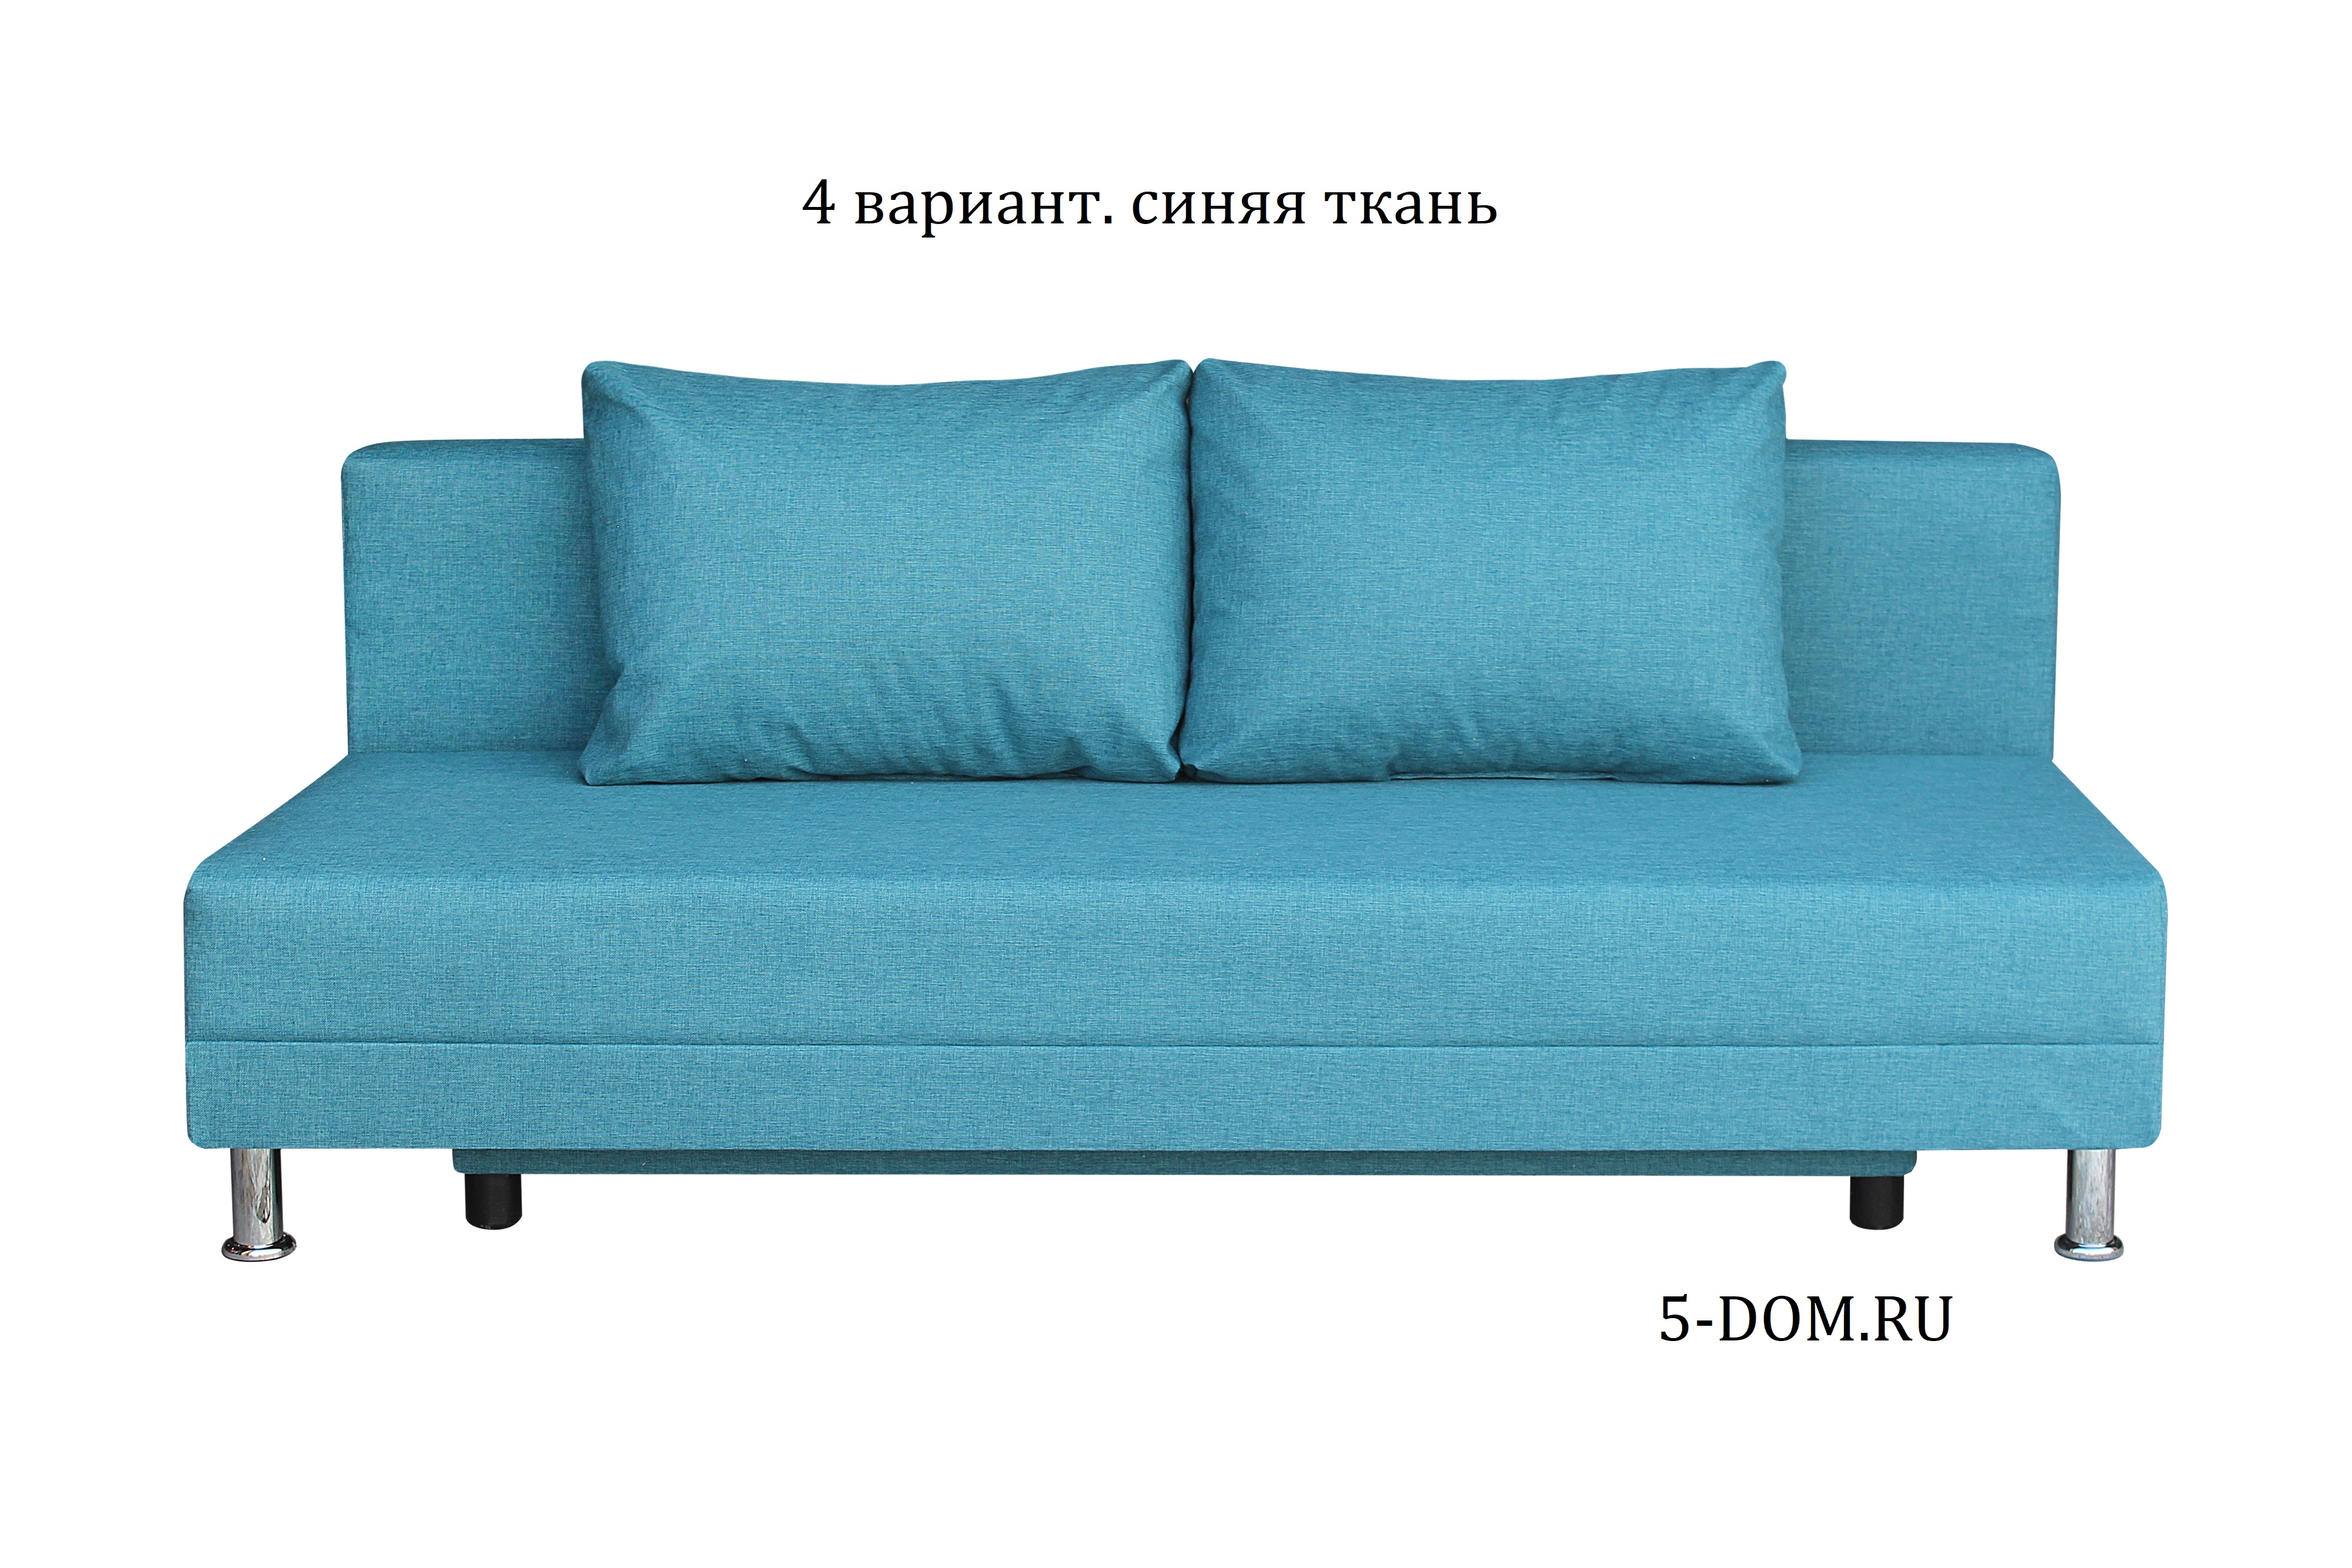 Диван-кровать комфорт без подлокотников Baltic Azure (2 подушки)